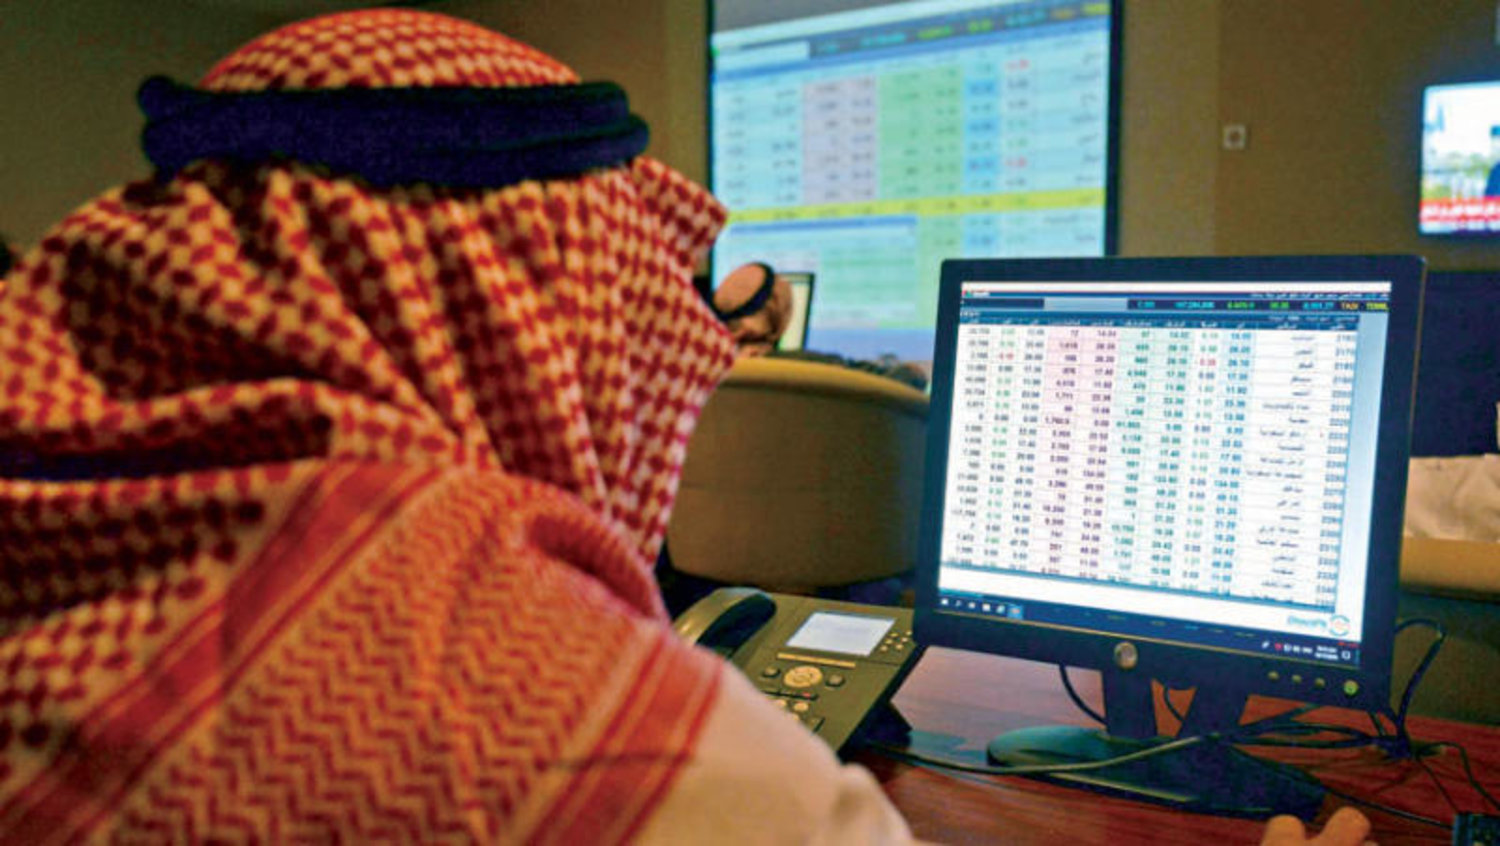 أنهى مؤشر سوق الأسهم السعودية تداولاته أمس على ارتفاع 1.9% ليغلق عند 6327 نقطة